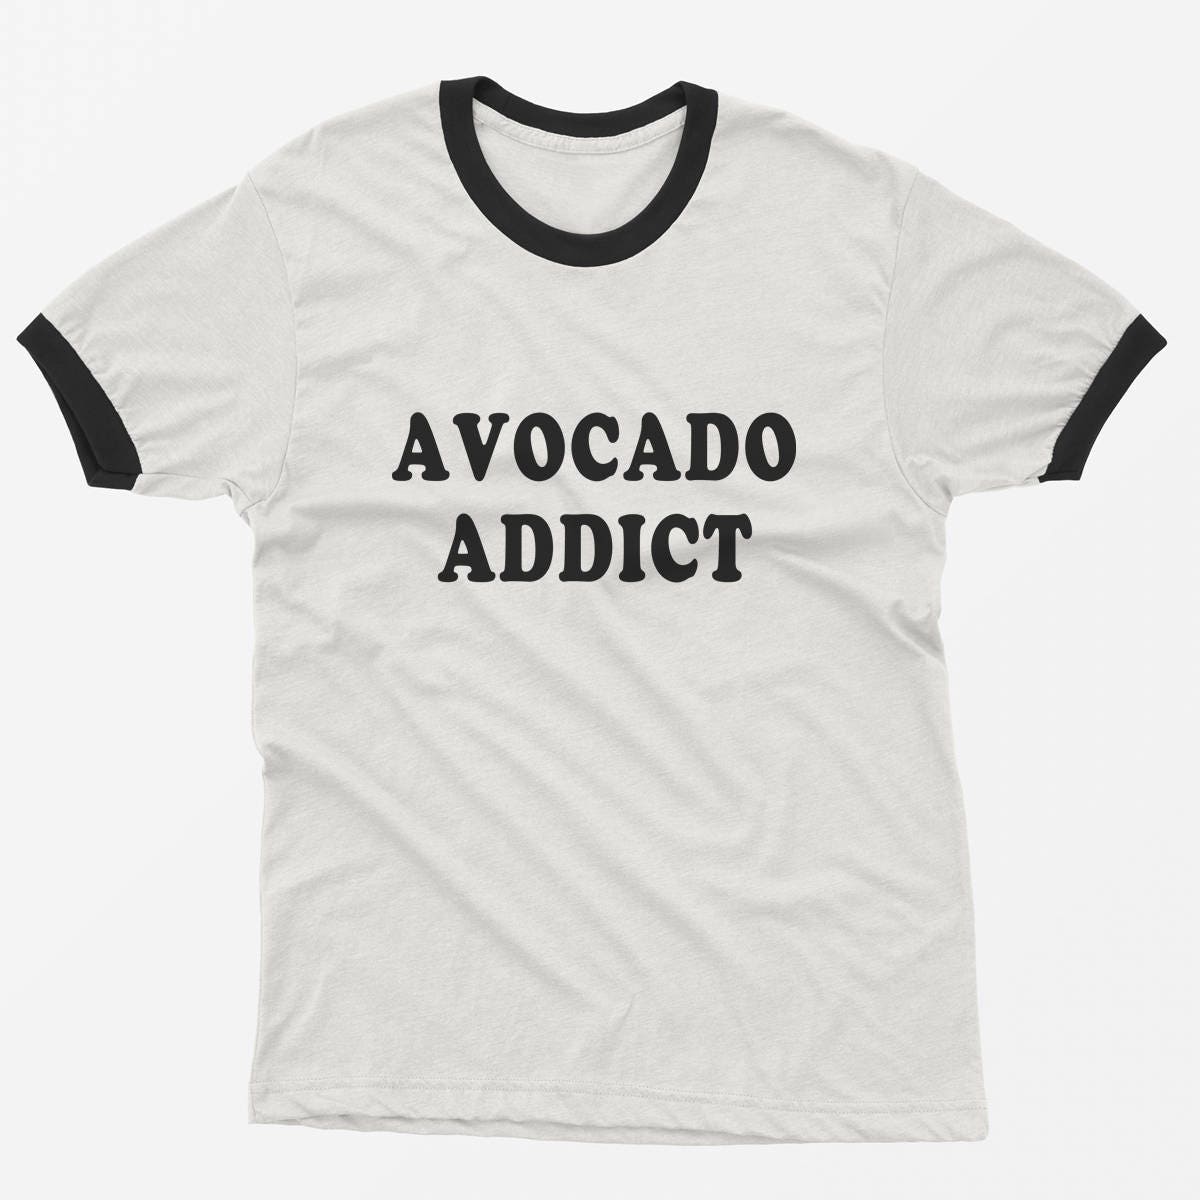 Avocado shirt ringer tee funny tshirt graphic tees tumblr teen | Etsy